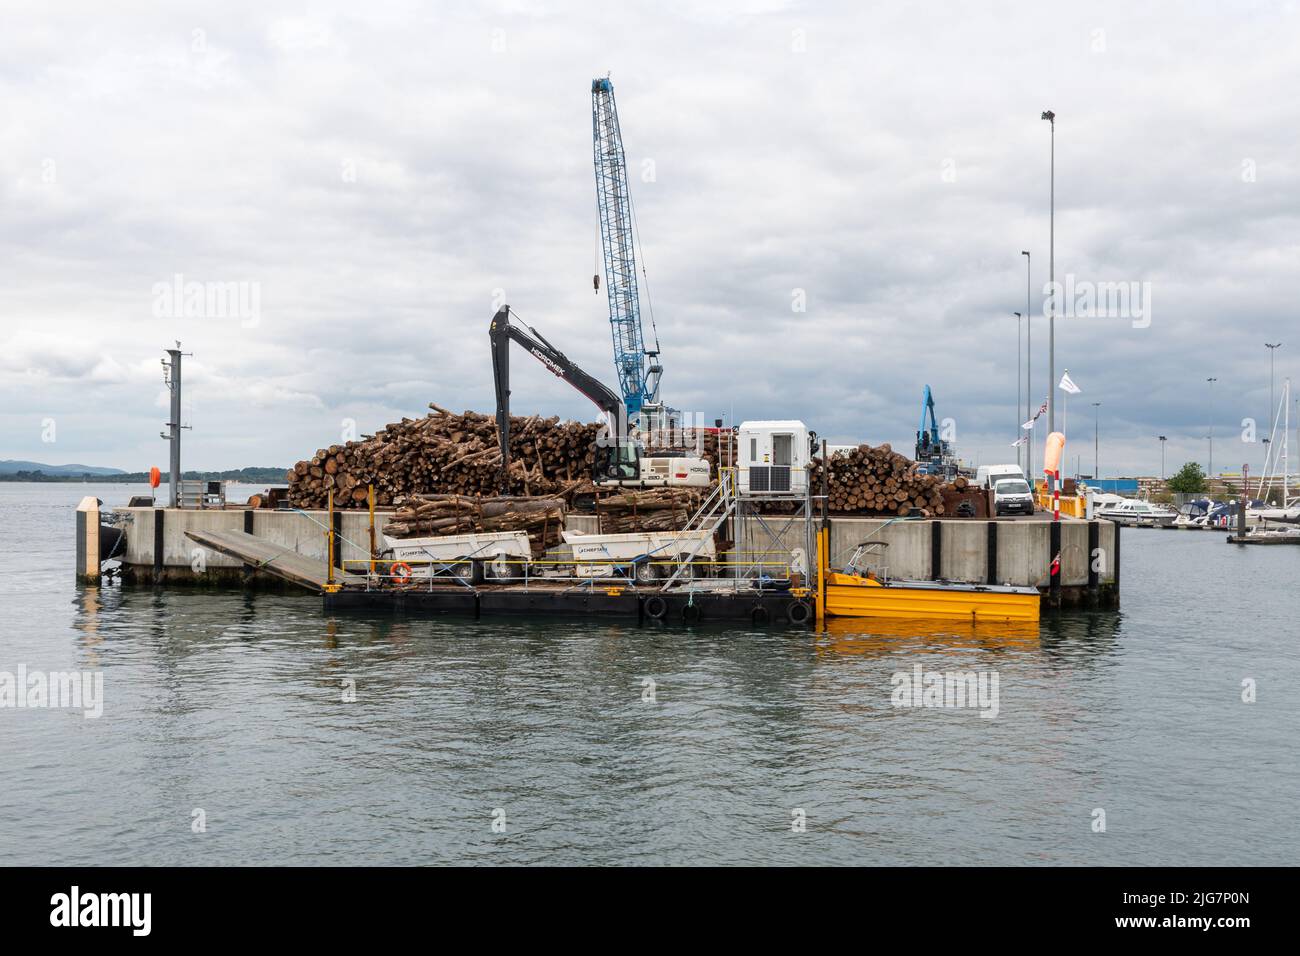 Port de Poole, avec une grande cheminée de bois, entreprise d'importation et d'exportation, Dorset, Angleterre, Royaume-Uni Banque D'Images